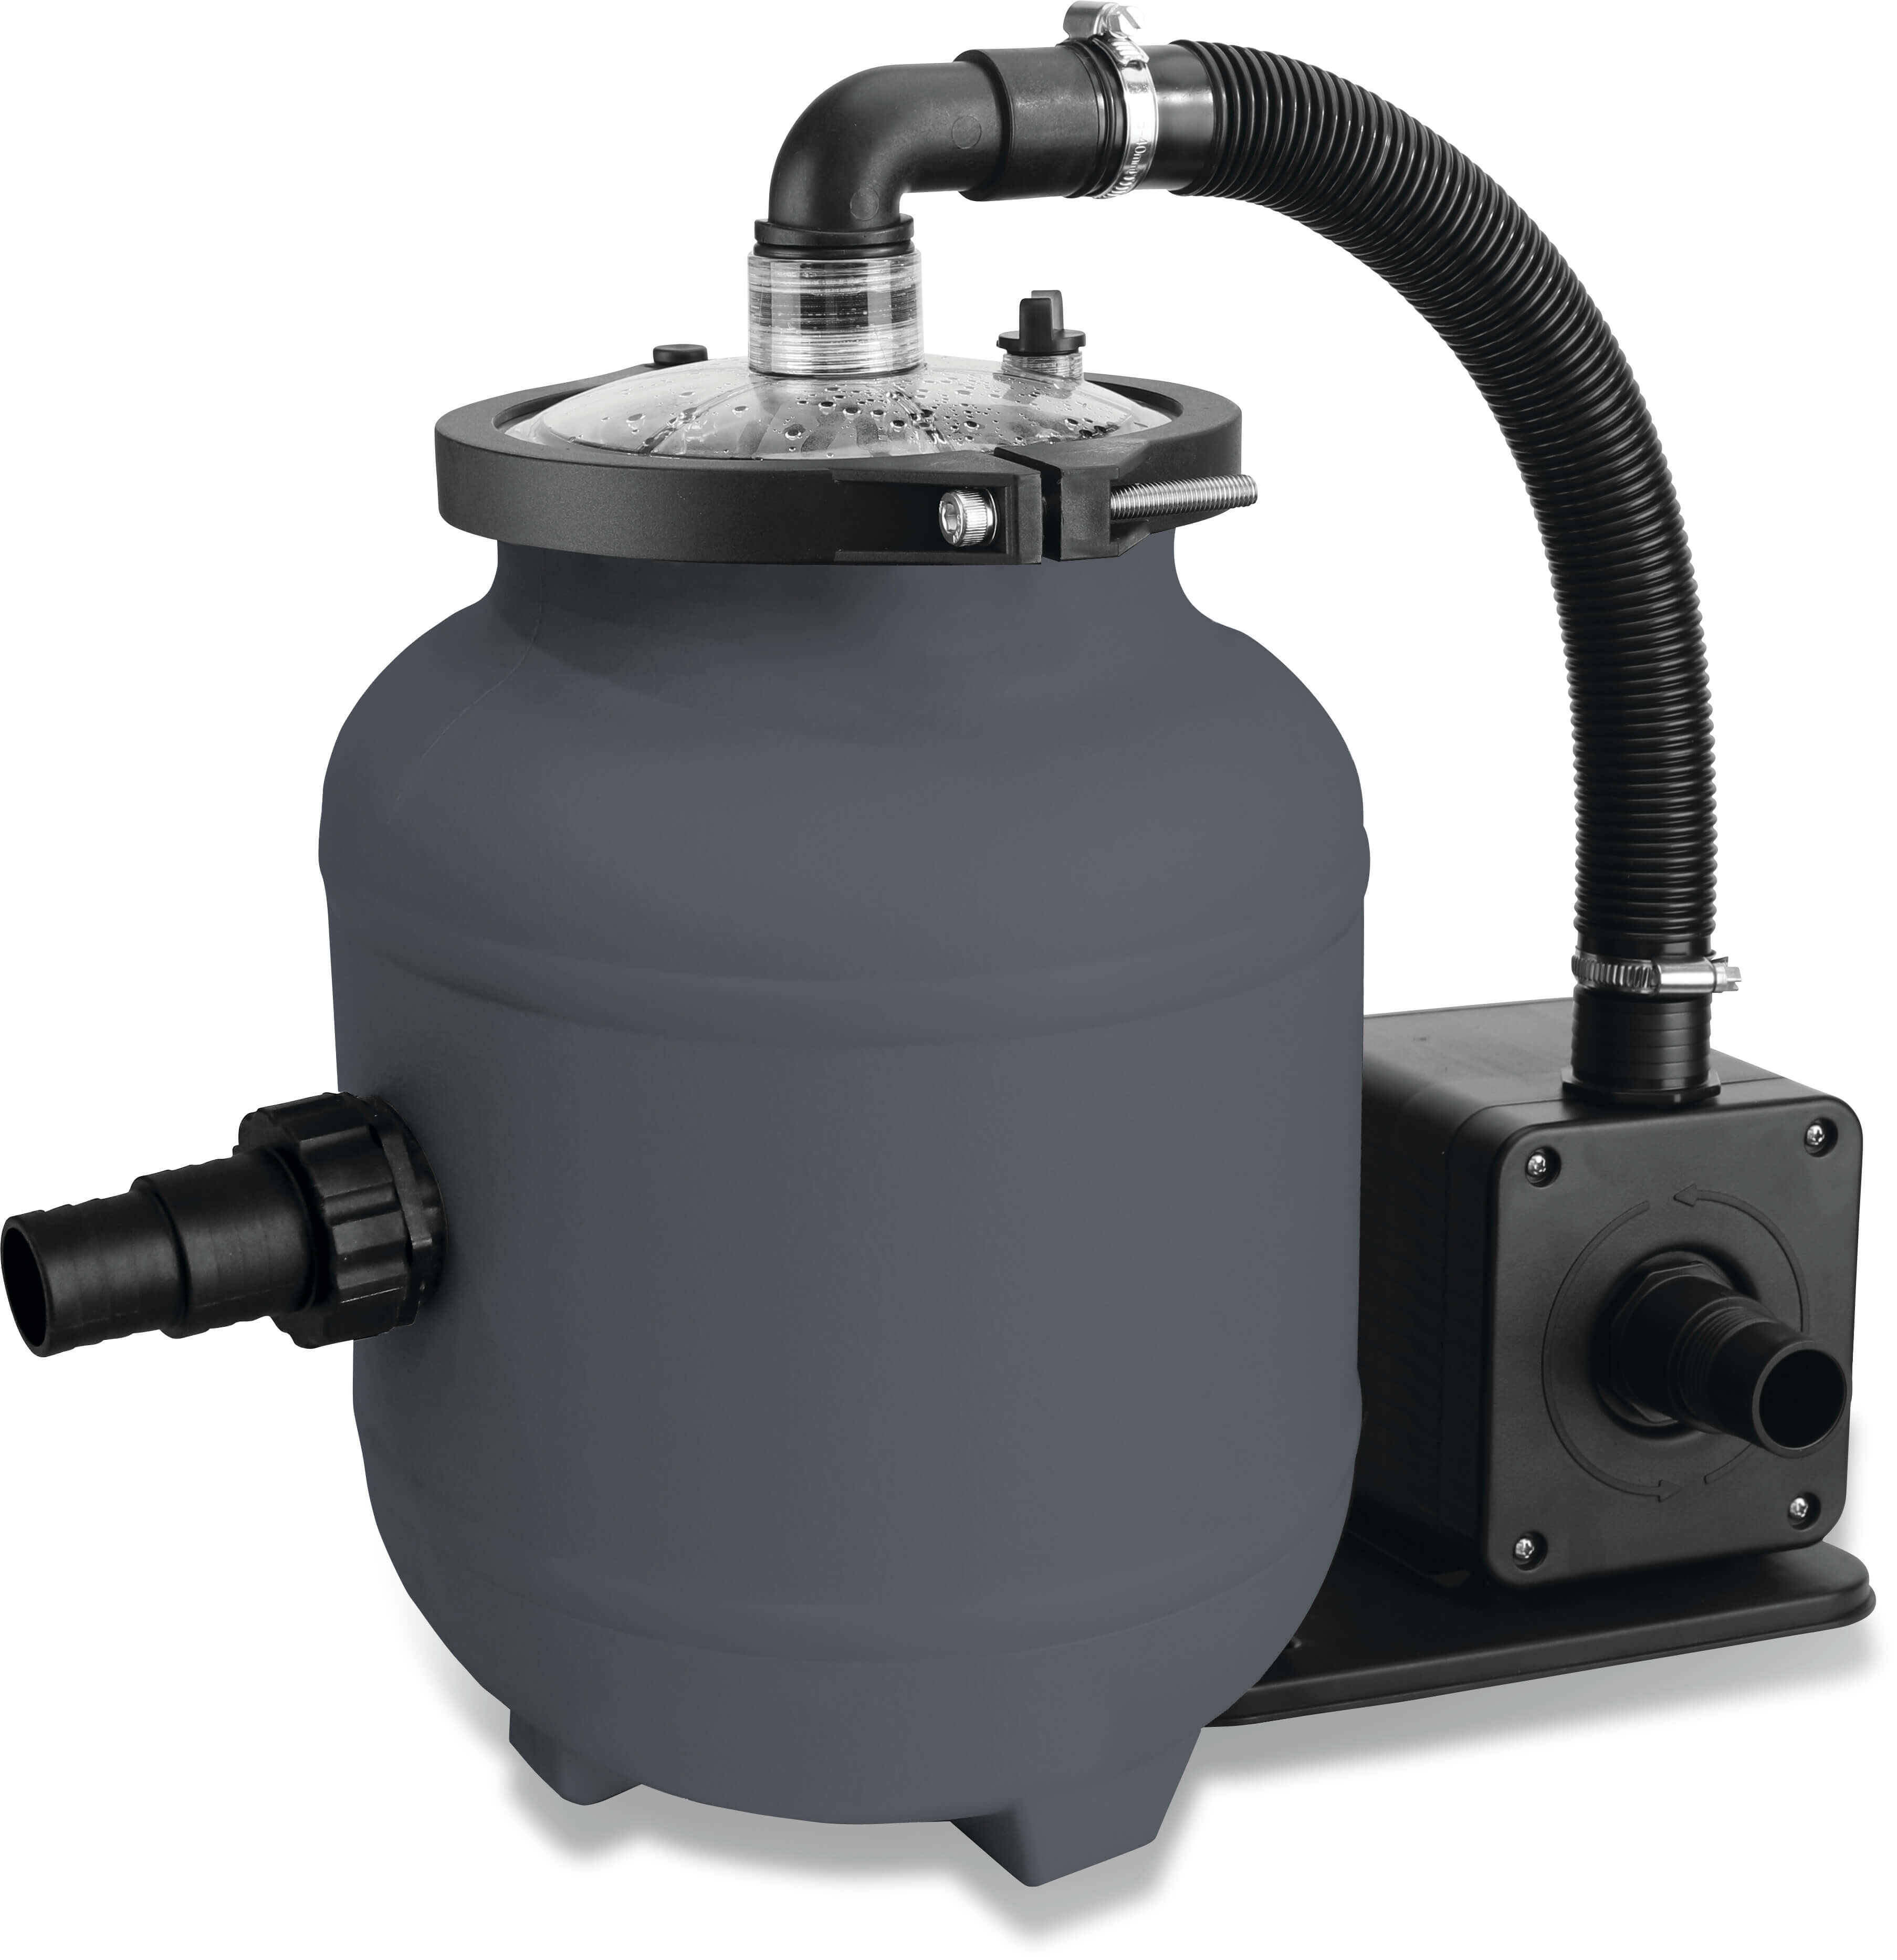 Kit de filtration HDPE 32-38 mm embout 2bar 230VAC gris 12,5ltr type EZ clean Aqualoon